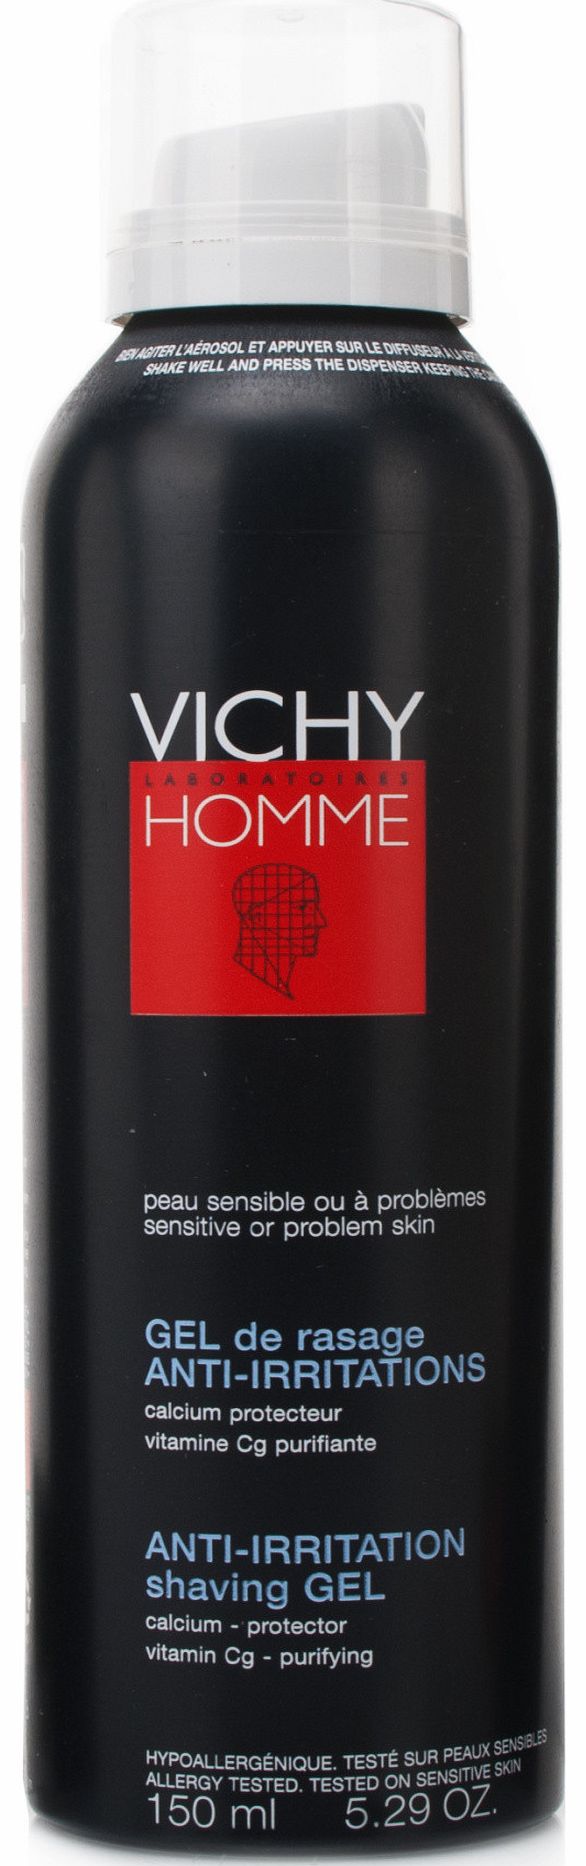 Vichy homme shaving gel